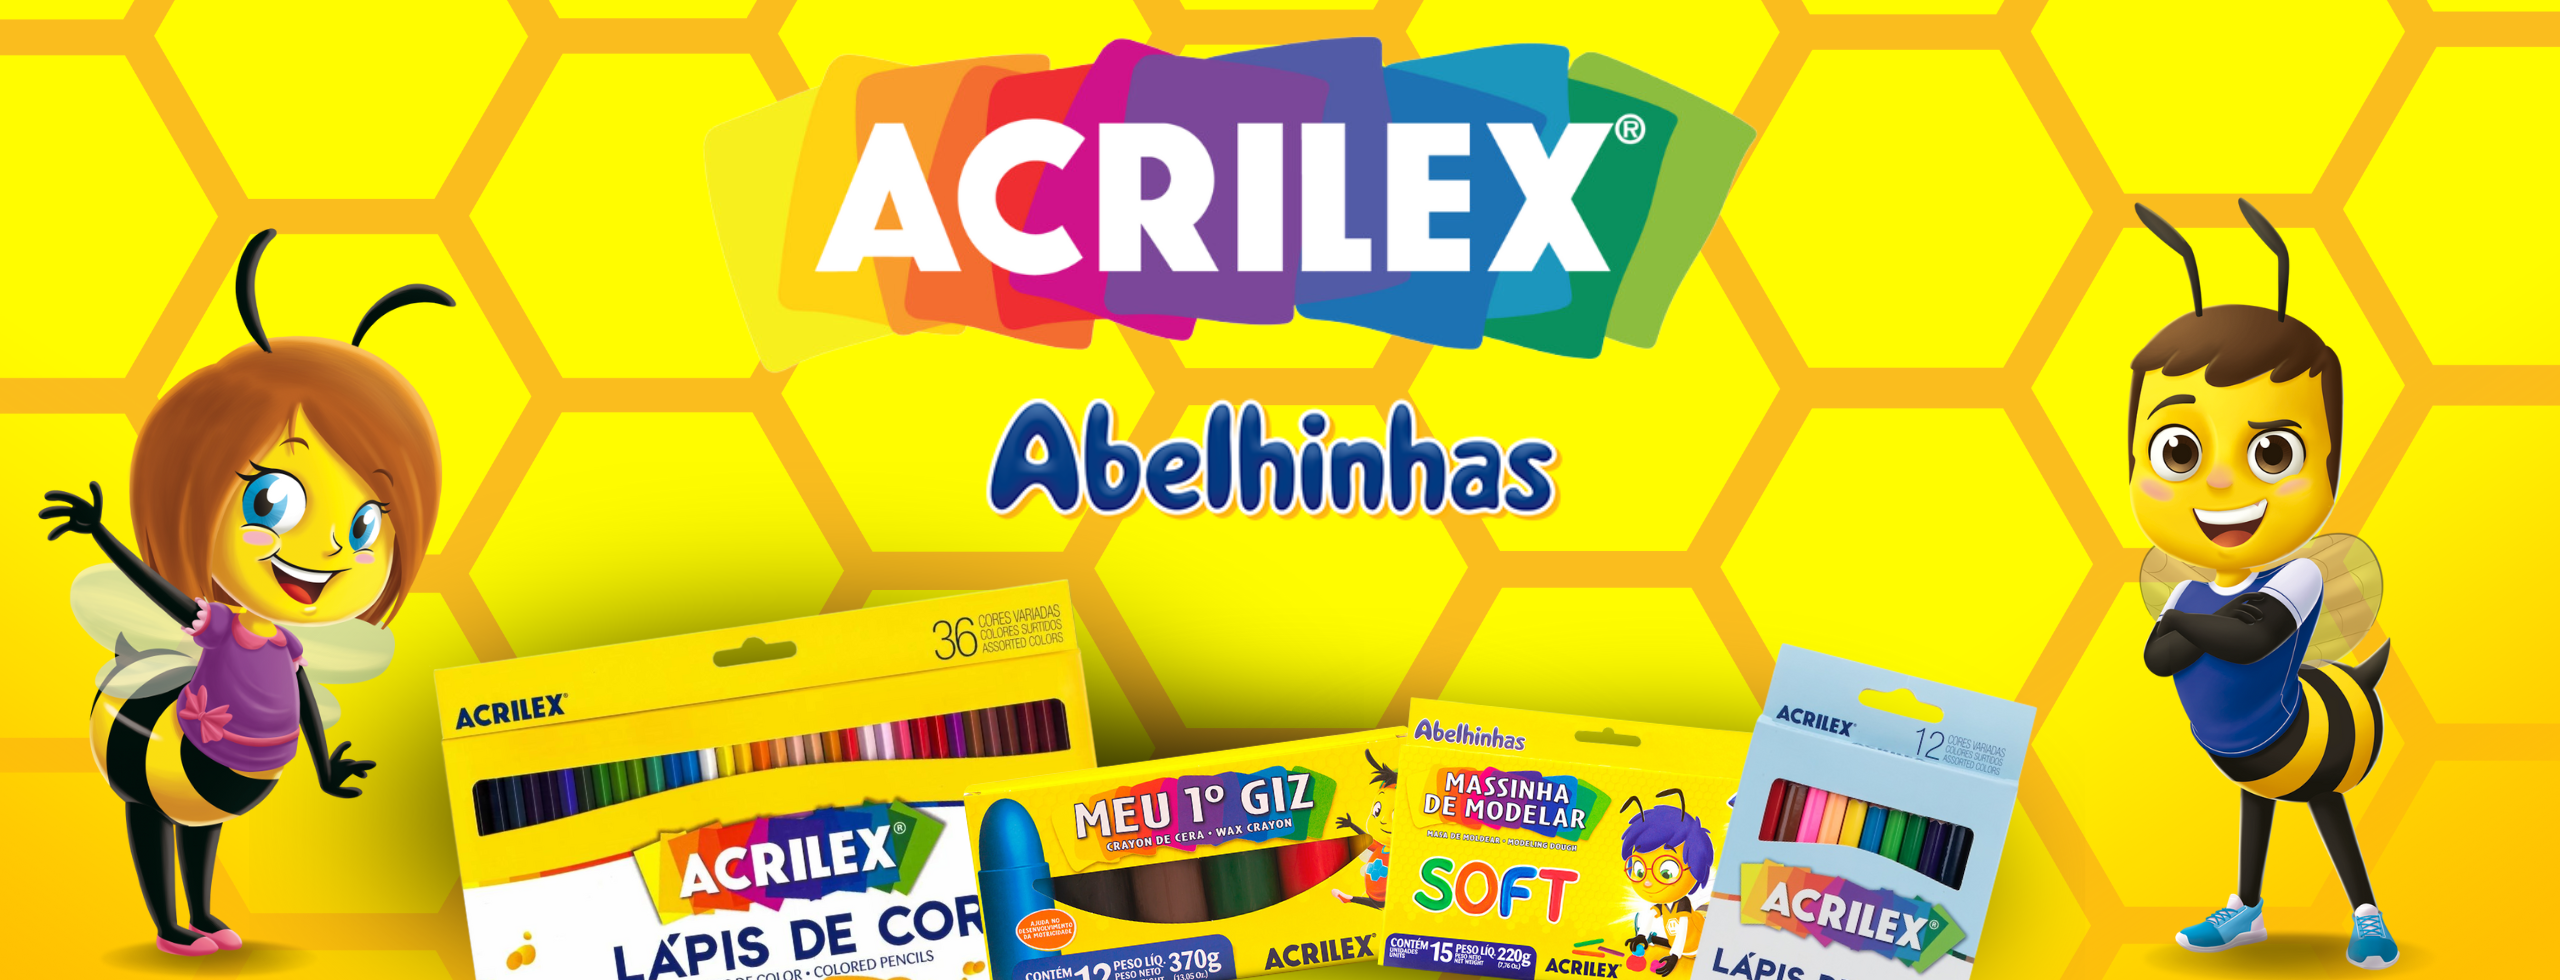 Banner Acrilex